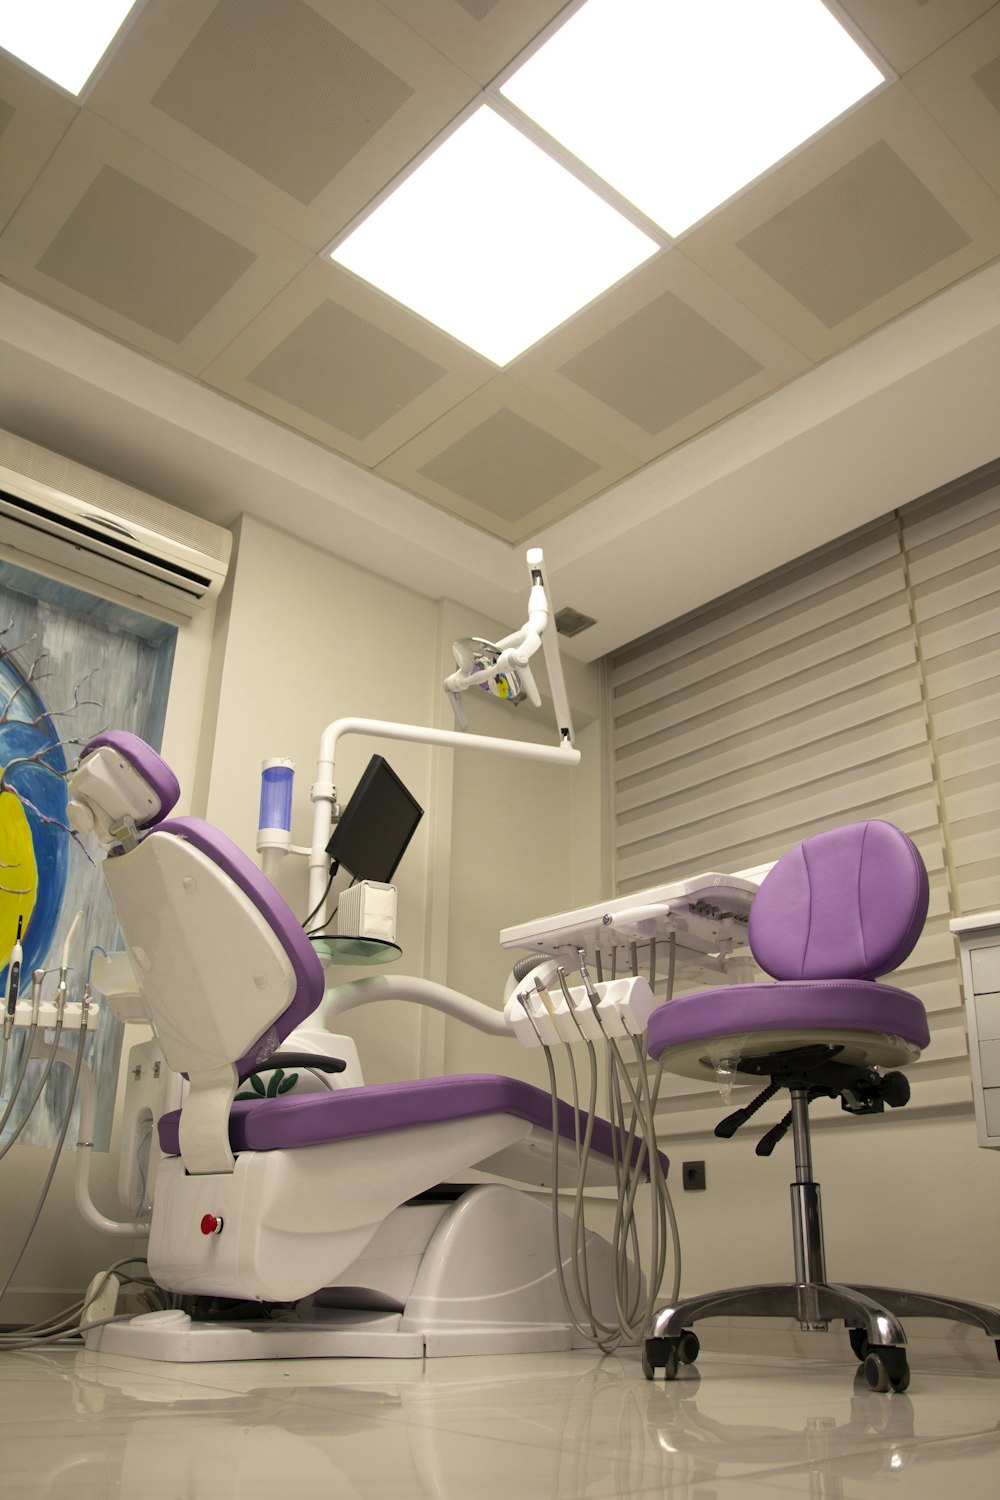 un fauteuil de dentiste dans une pièce avec un puits de lumière